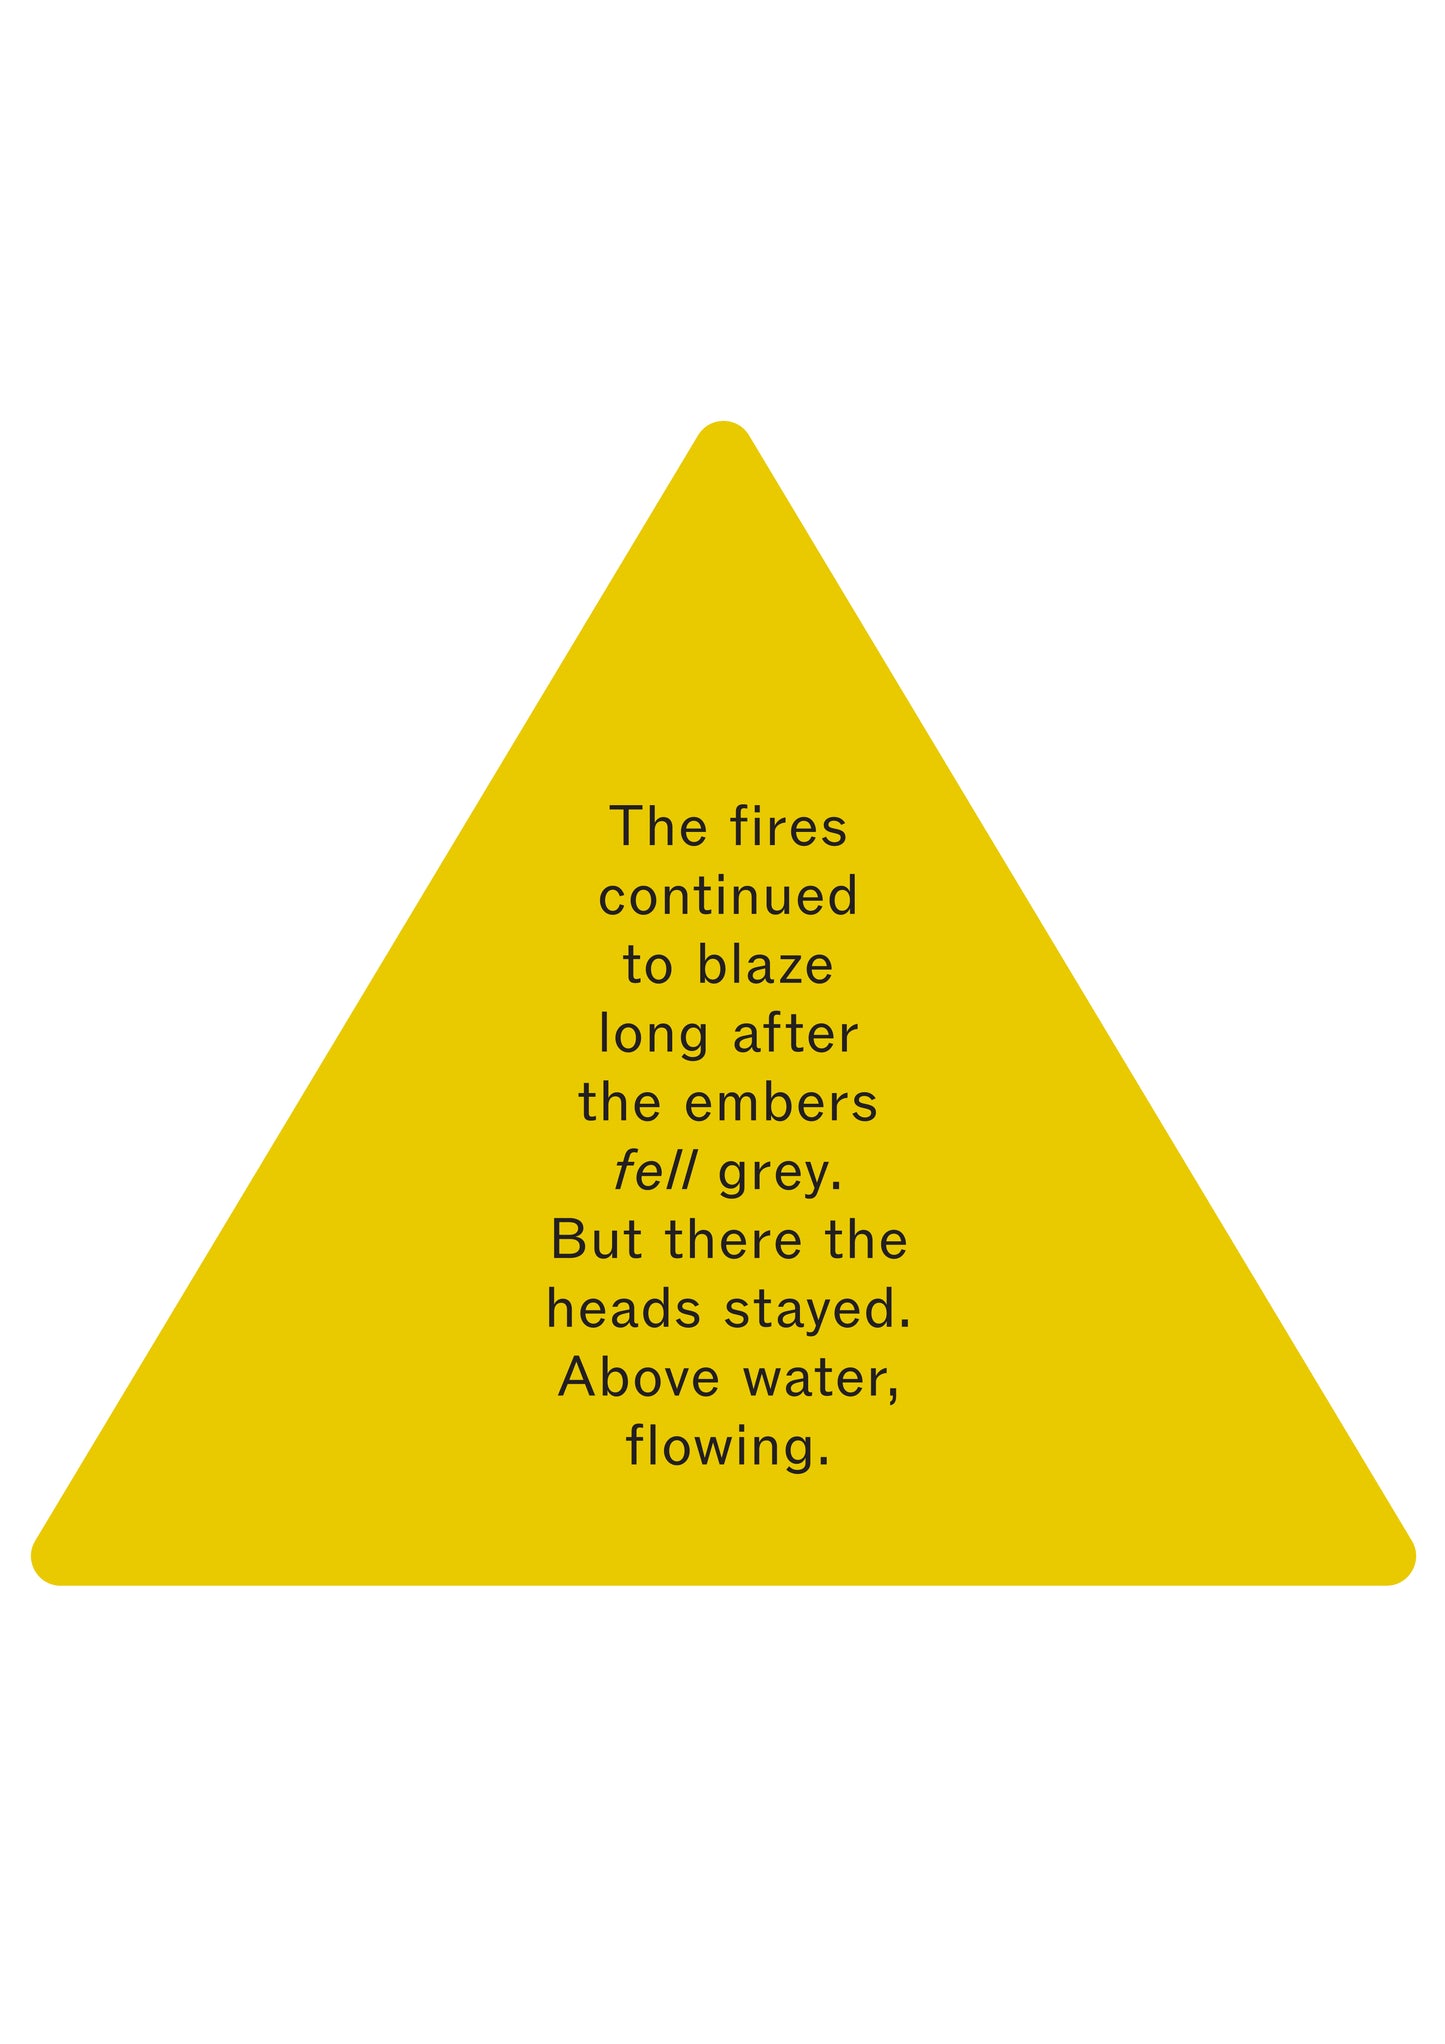 WARNING: Risk of Fire Pictogram by Harry Bennett